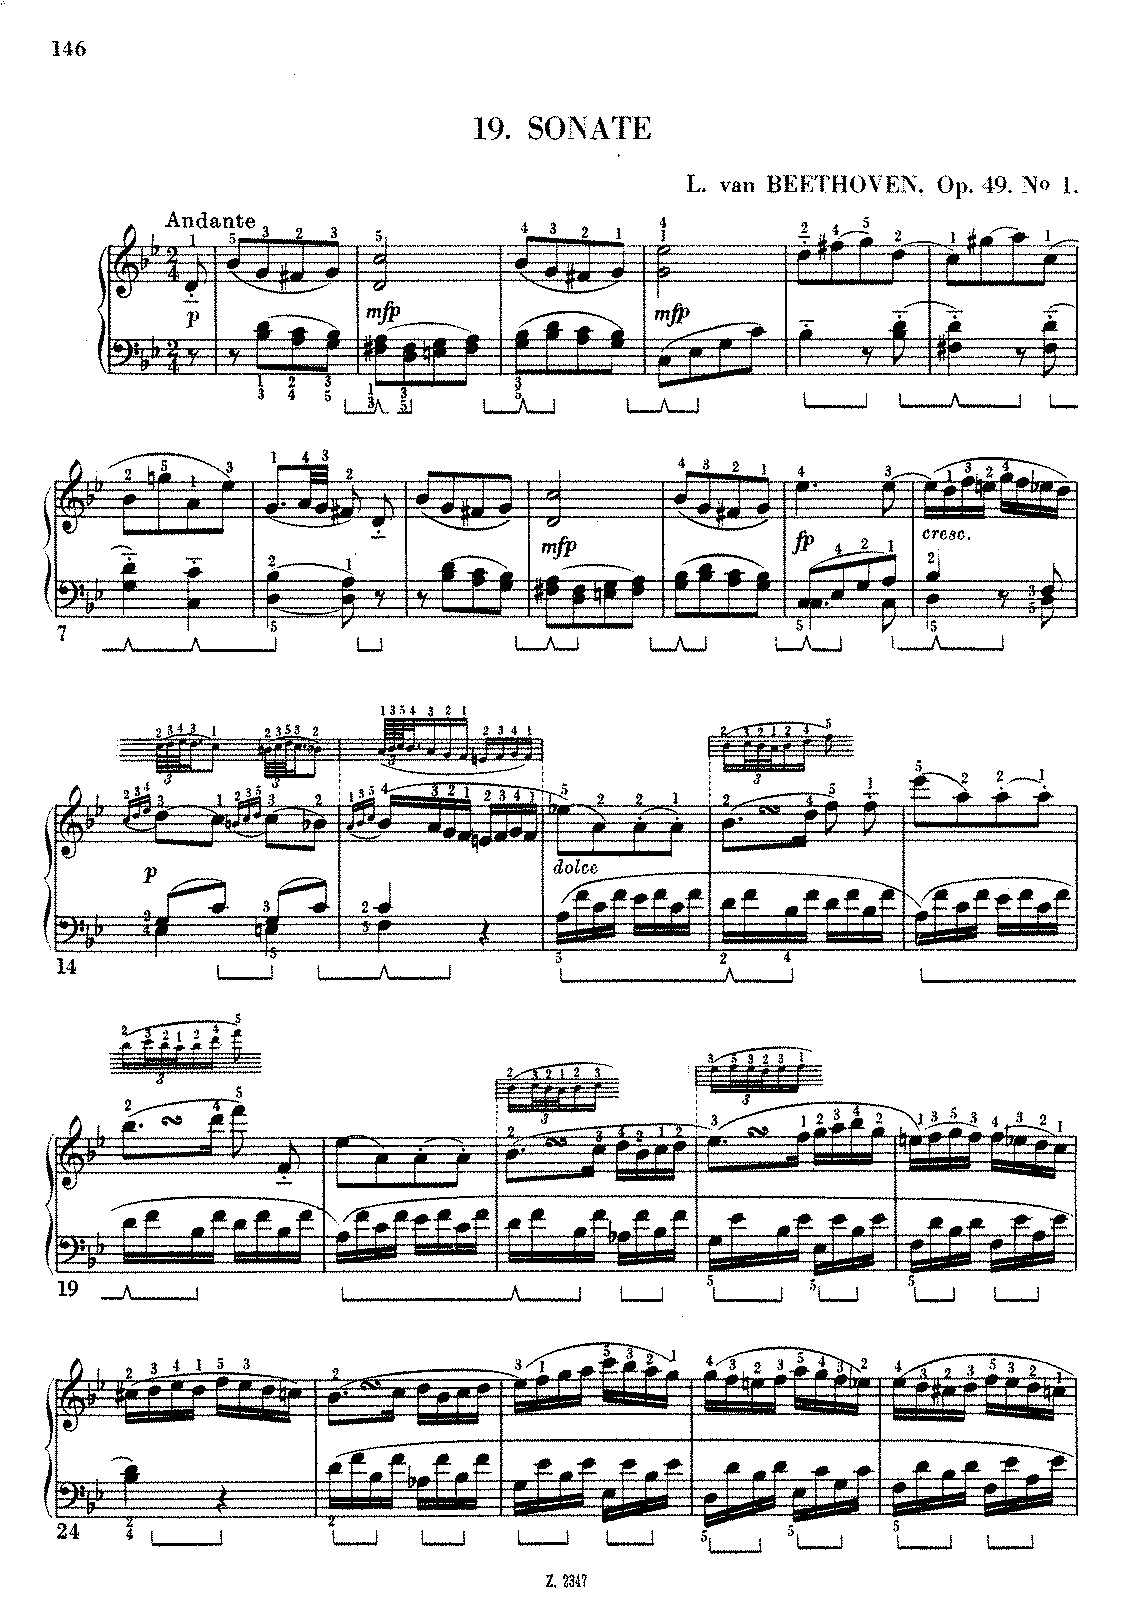 File:PMLP1471-Beethoven.op49no1.sonata.no19.wiener.pdf